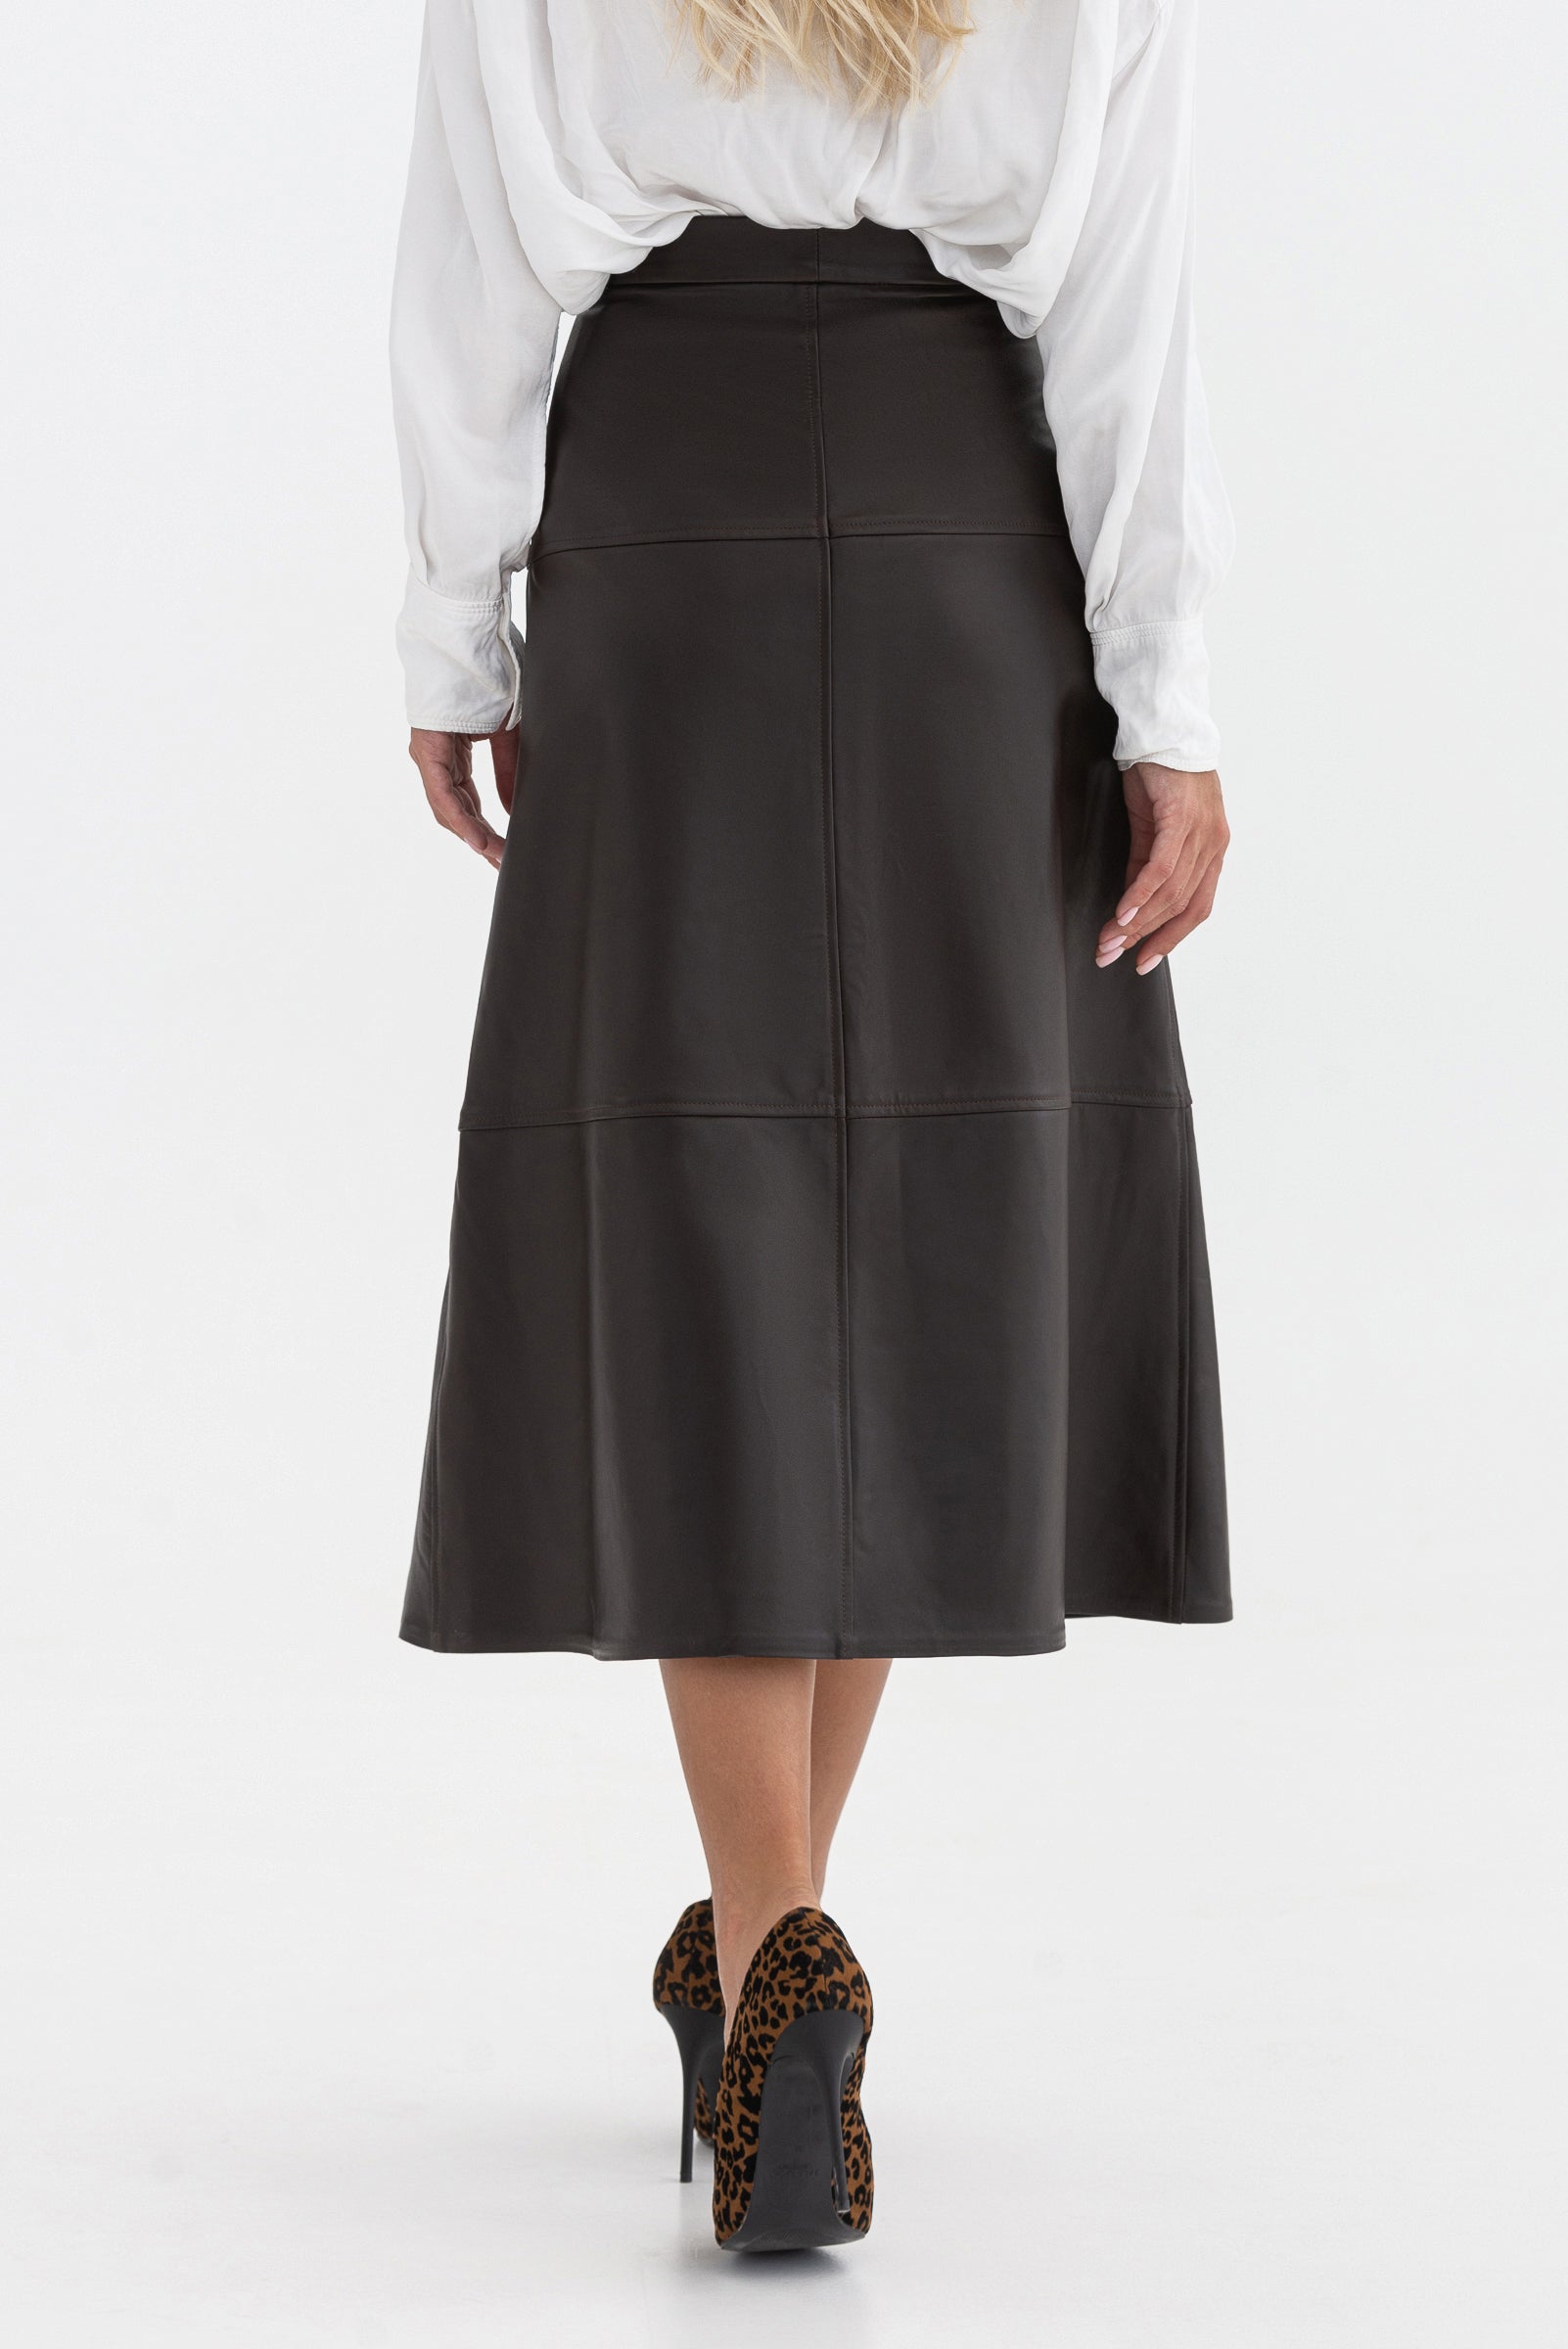 Sheepskin A-line skirt. Buttoned.